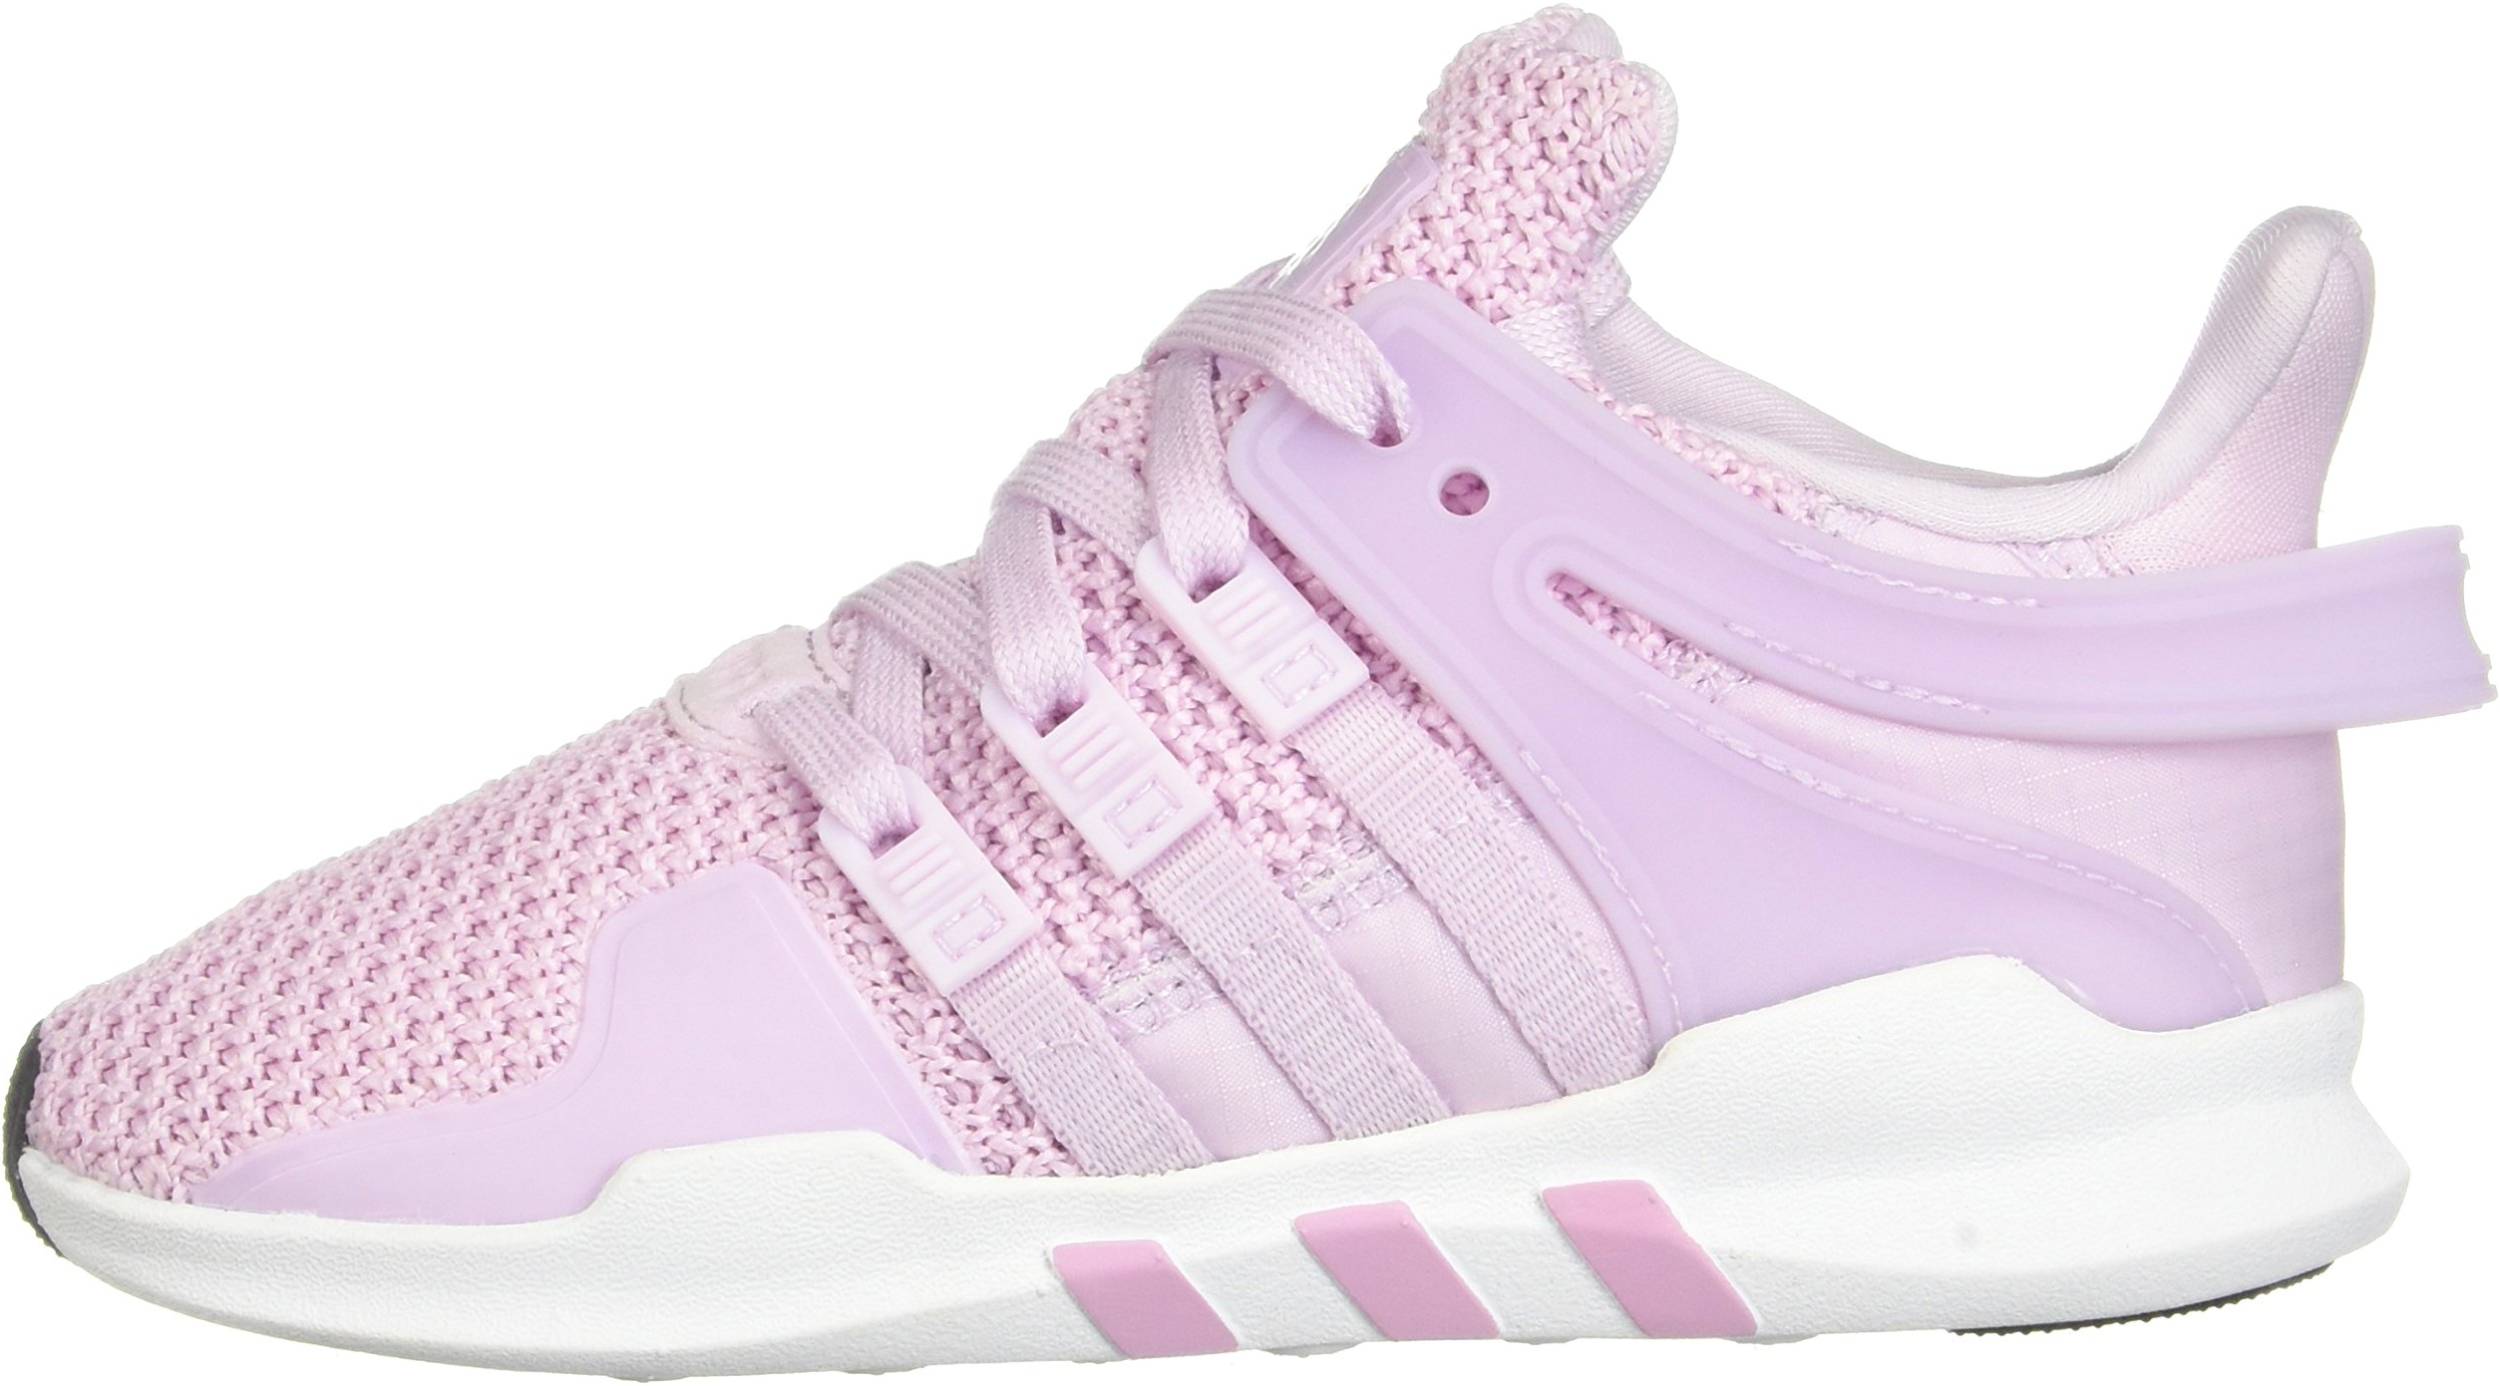 adidas equipment white pink